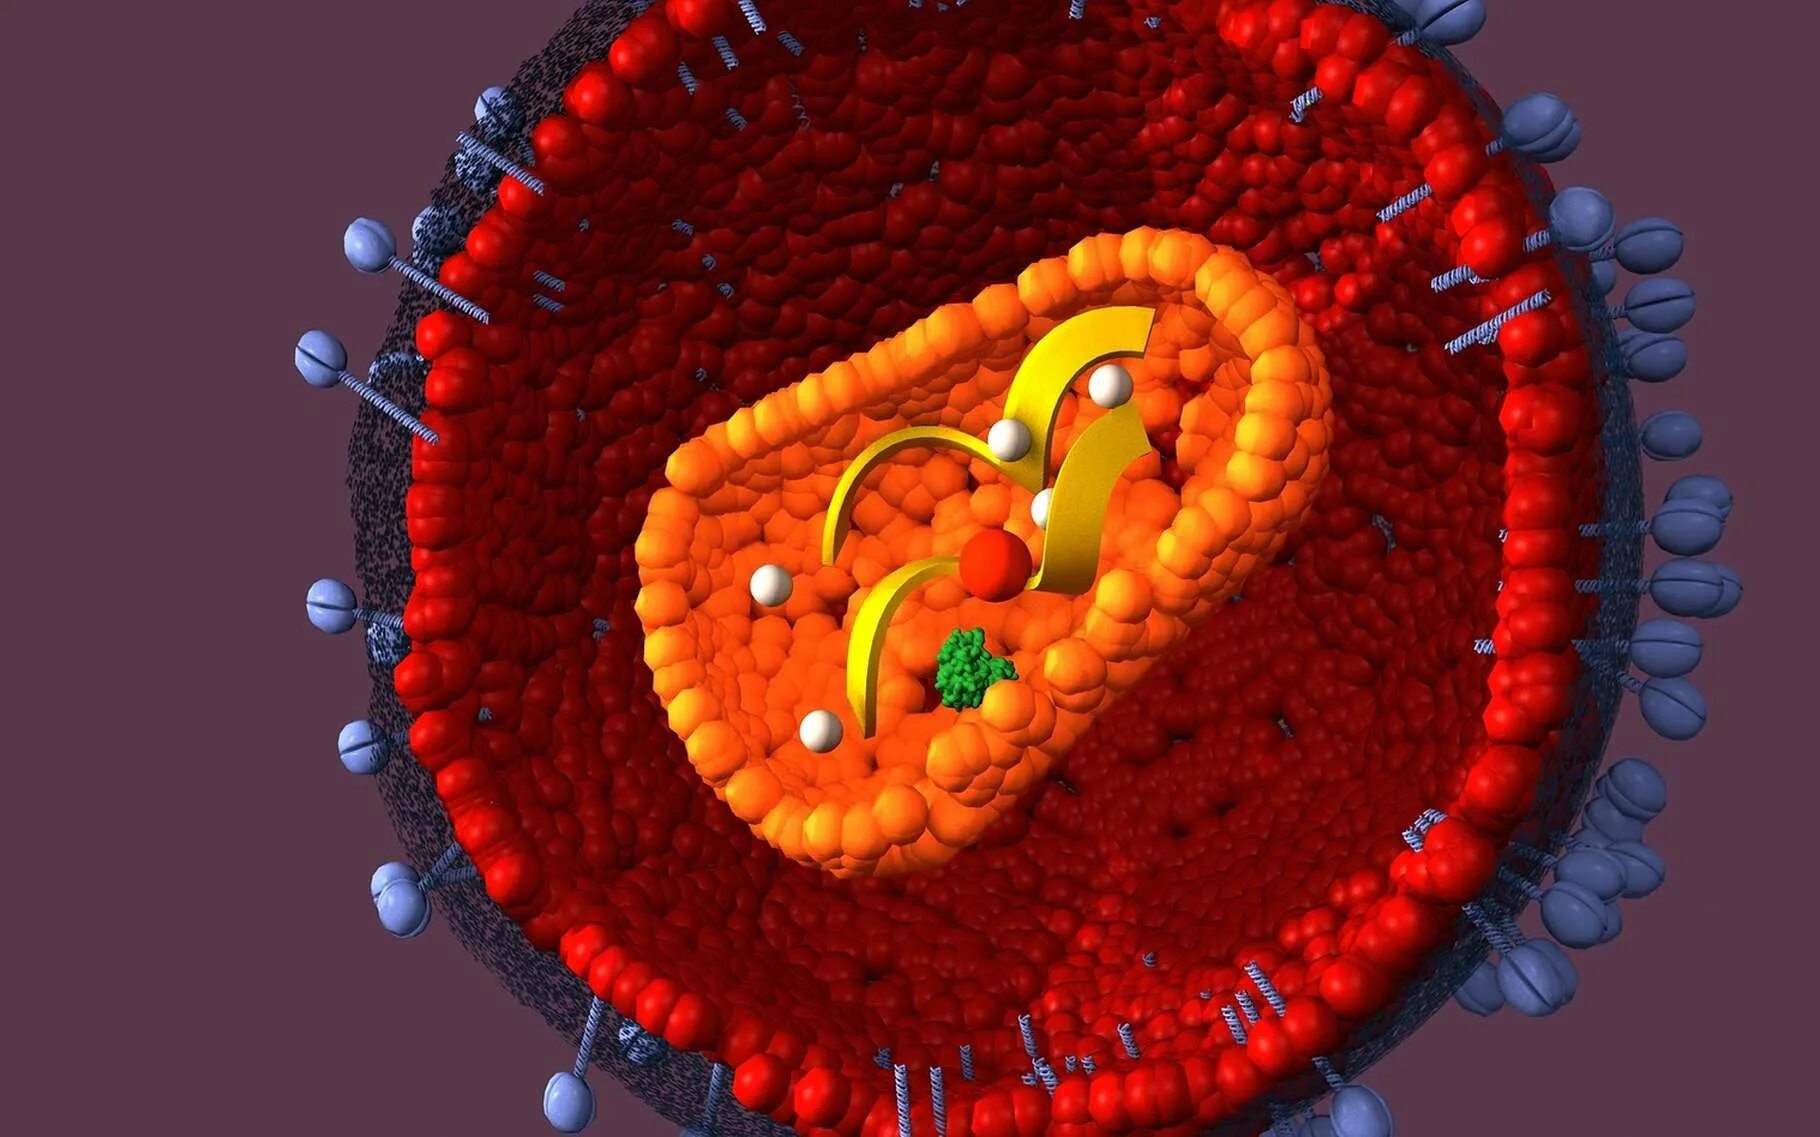 Спид эрон. Вирус иммунодефицита человека (Human Immunodeficiency virus). ВИЧ молекула вируса. Вирус иммунодефицита под микроскопом.